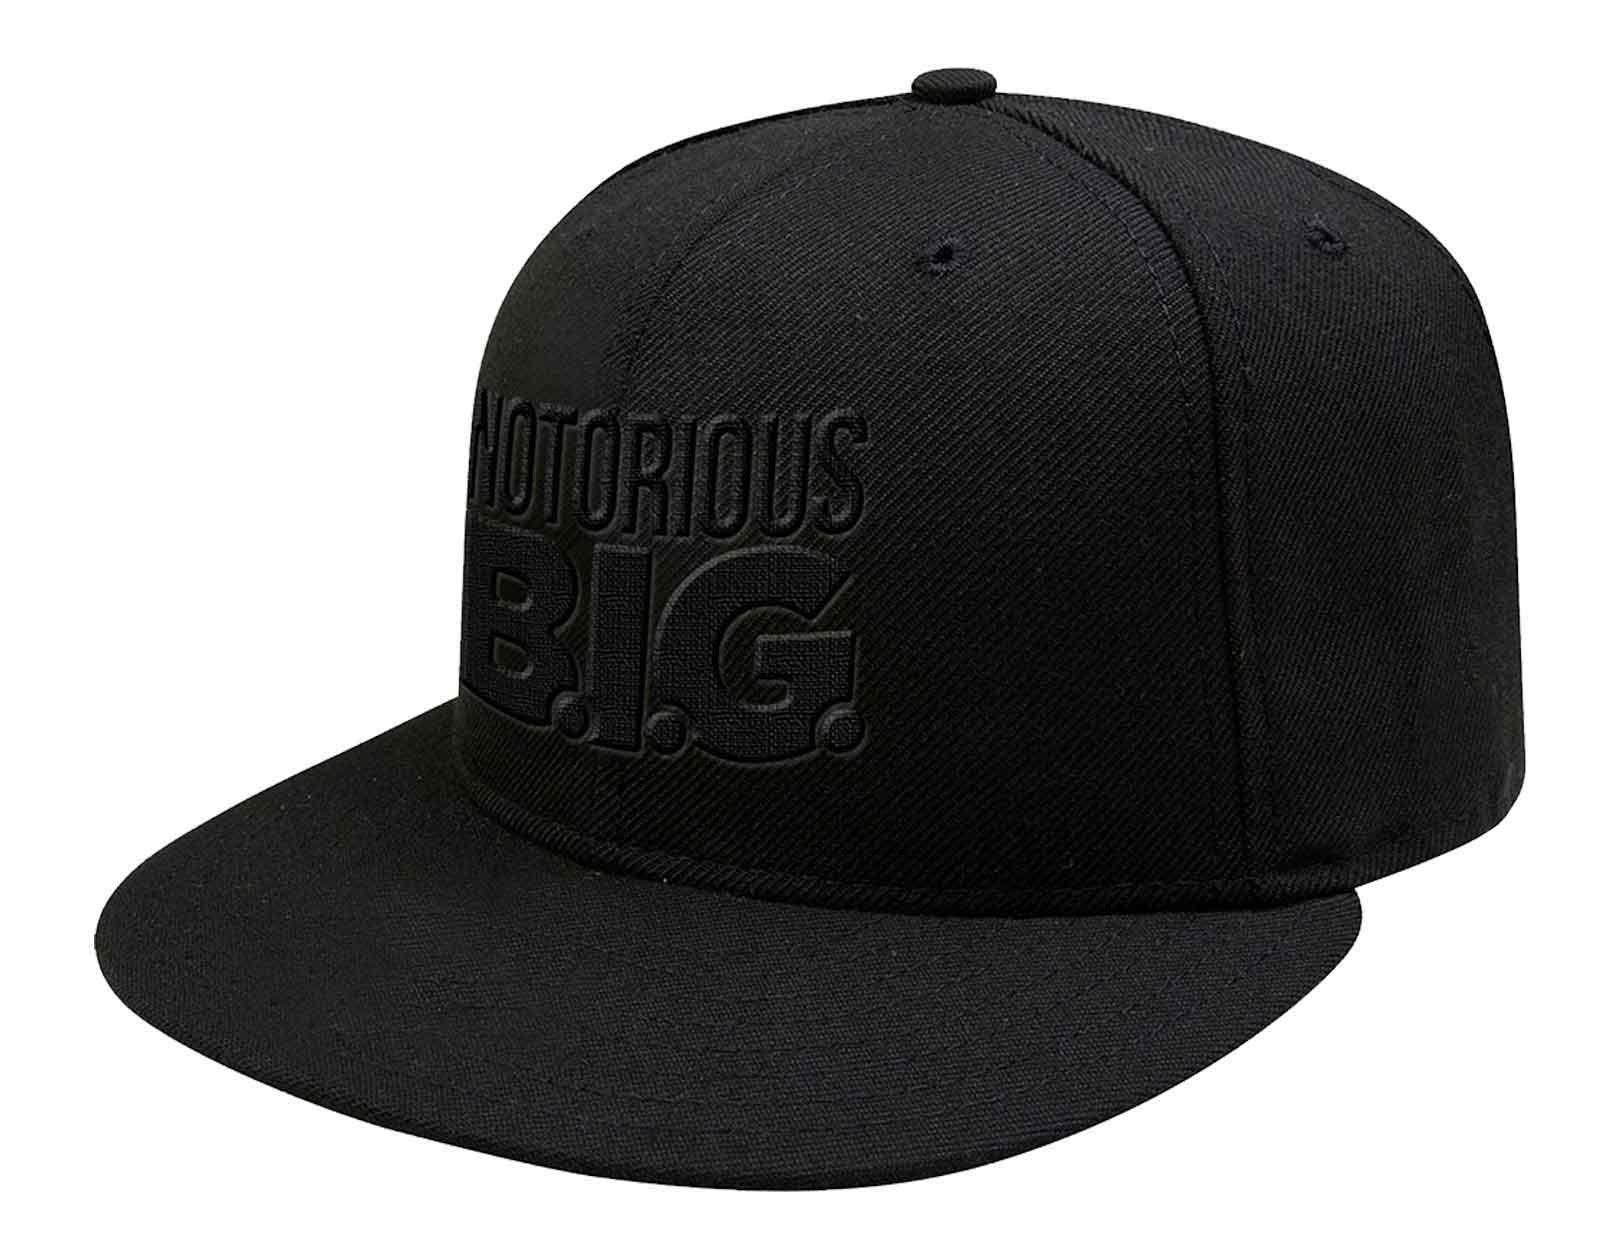 Бейсбольная кепка Snapback с логотипом Черный на черном Biggie Smalls, черный бейсболка real черный